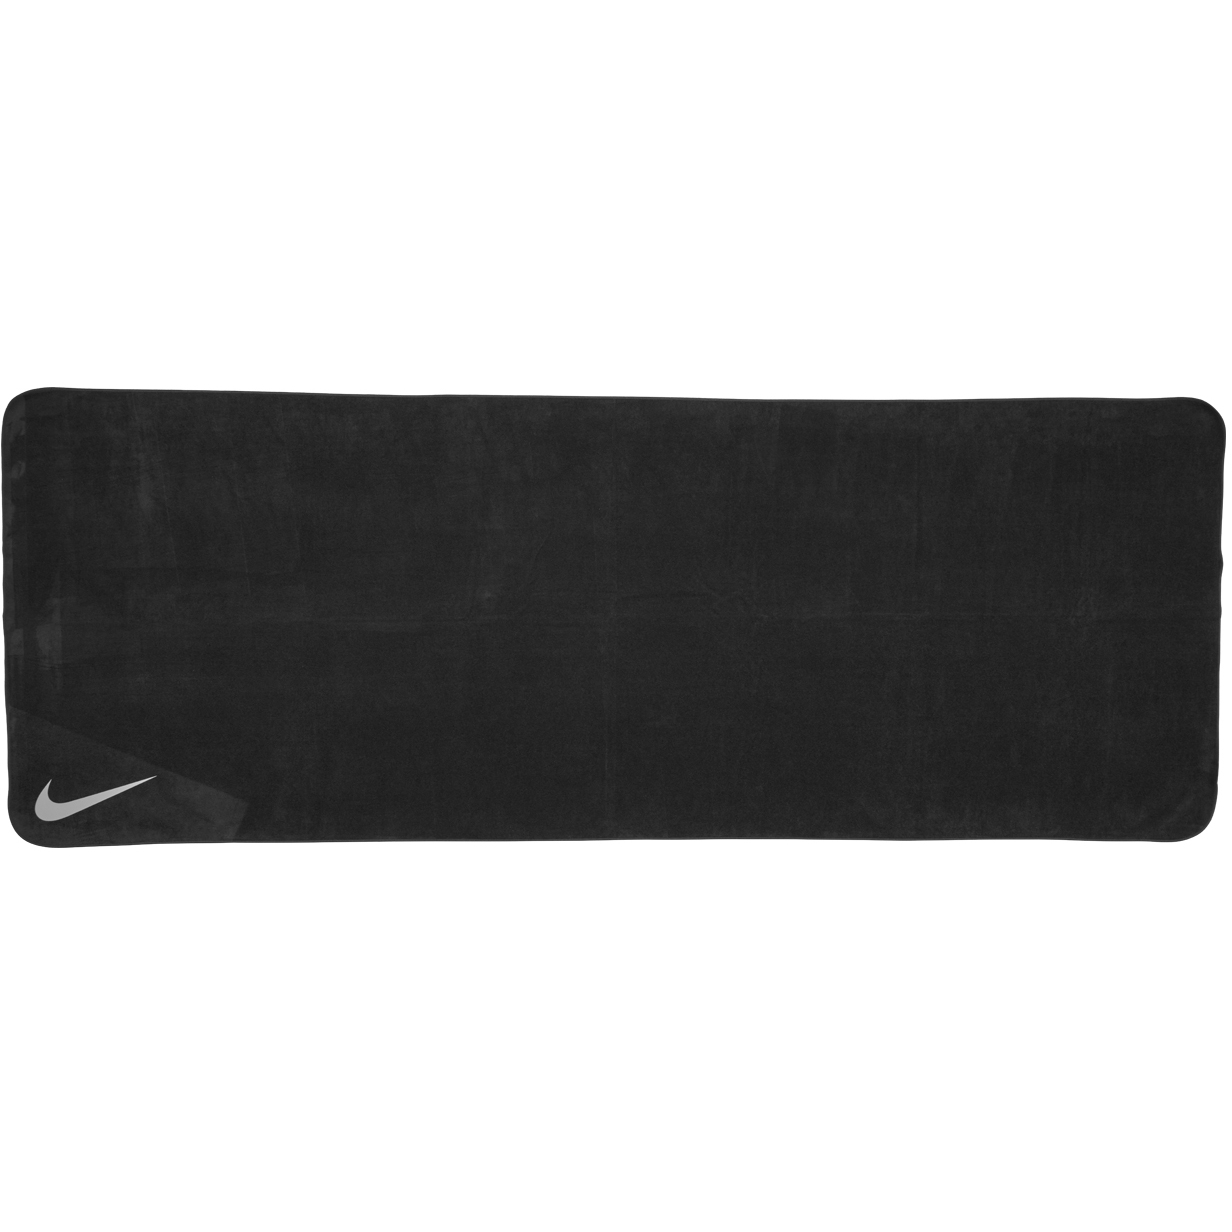 Produktbild von Nike Yoga-Handtuch - anthracite/medium grey 012